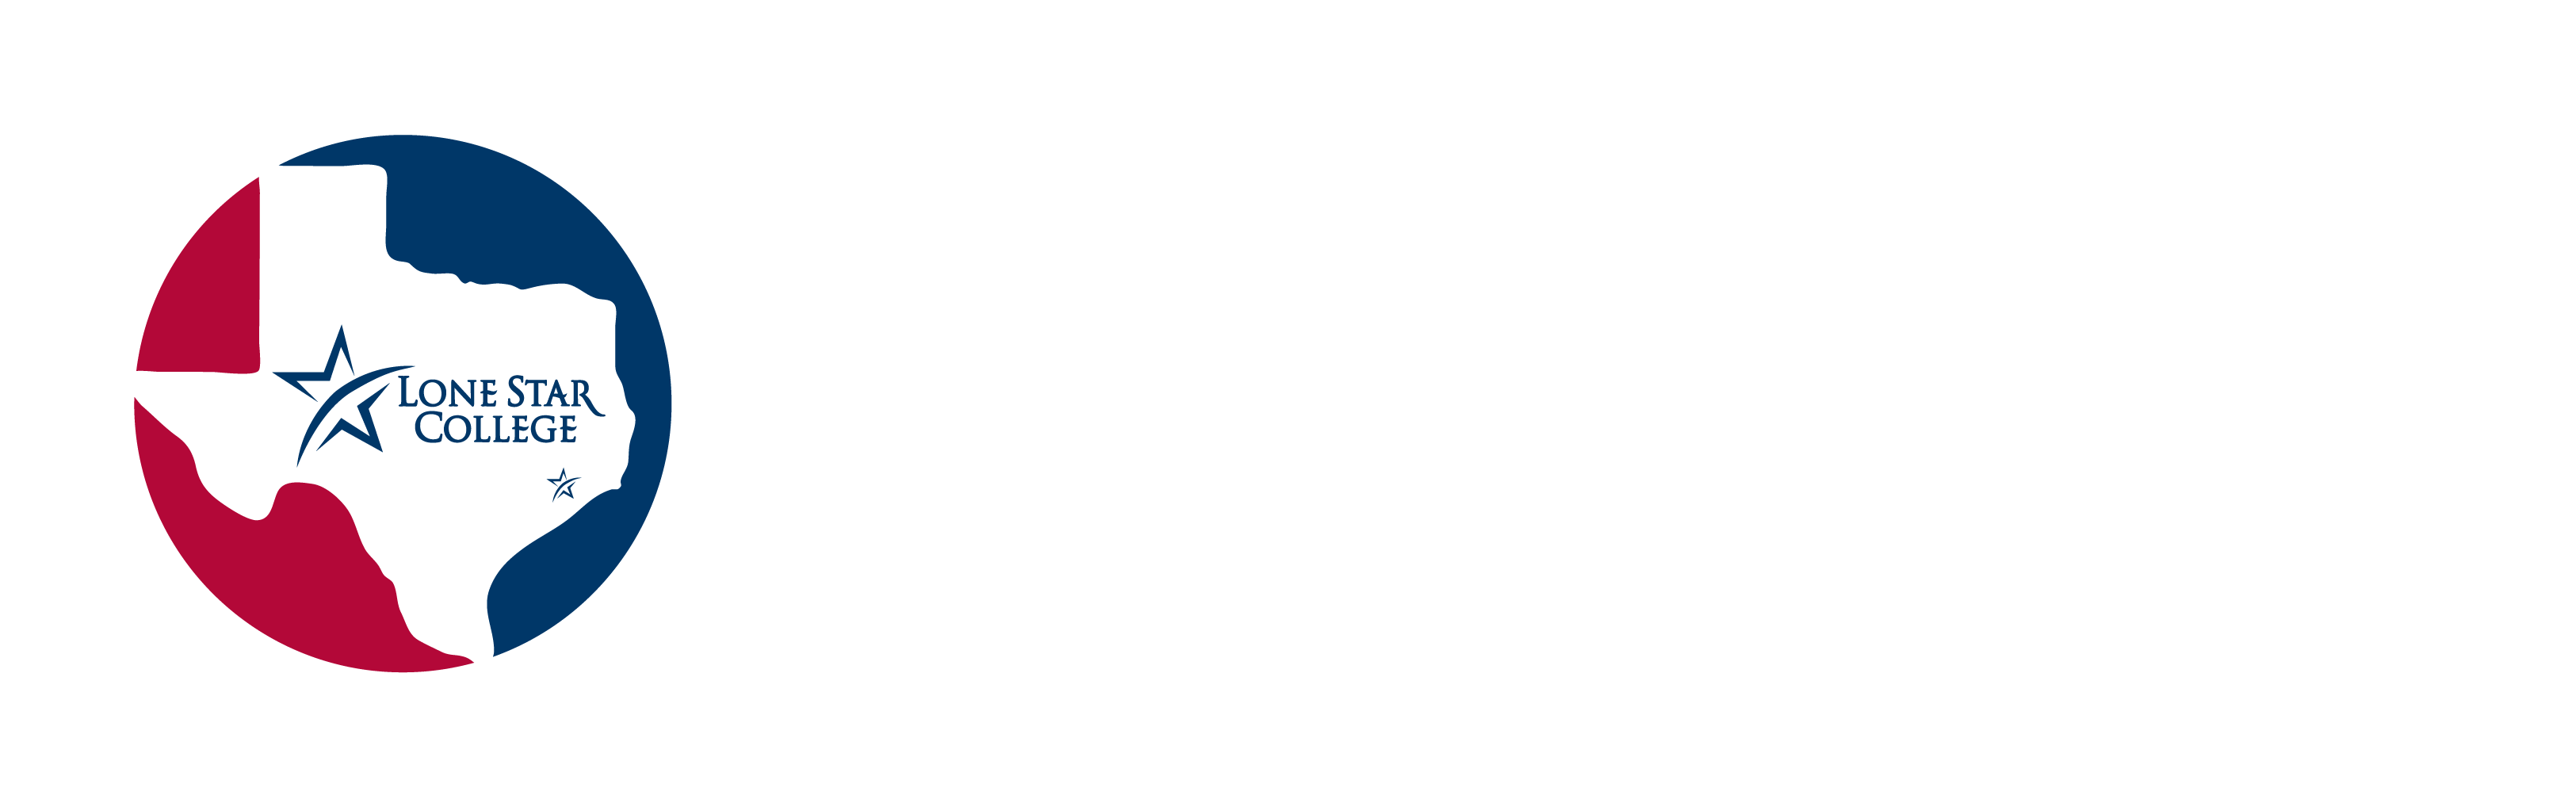 LSC-Montgomery Event Registration